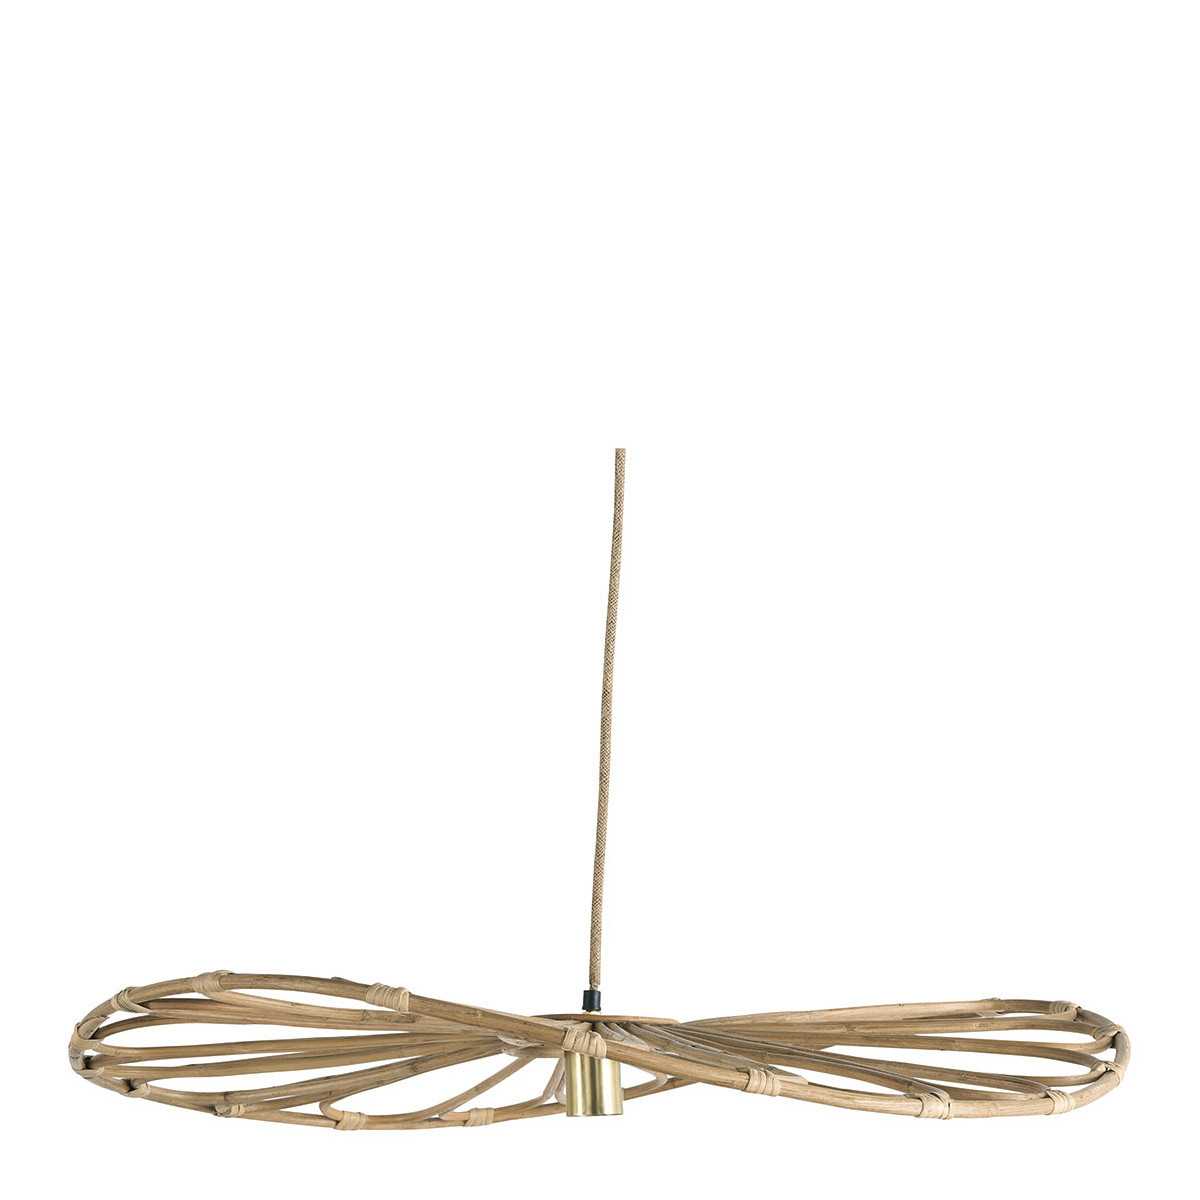 INTERIEUR- DECORATION|Pendant lamp SALOME in rattan - Large model - ⌀ 100 cmBLANC D'IVOIRESuspensions et Lustres